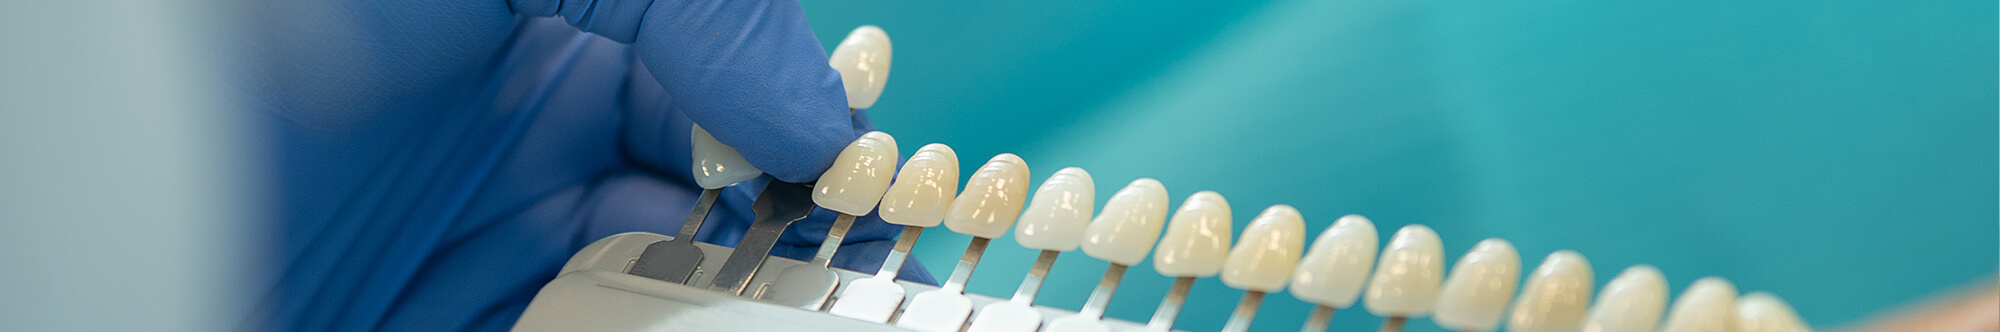 Dental veneers correct look of your teeth